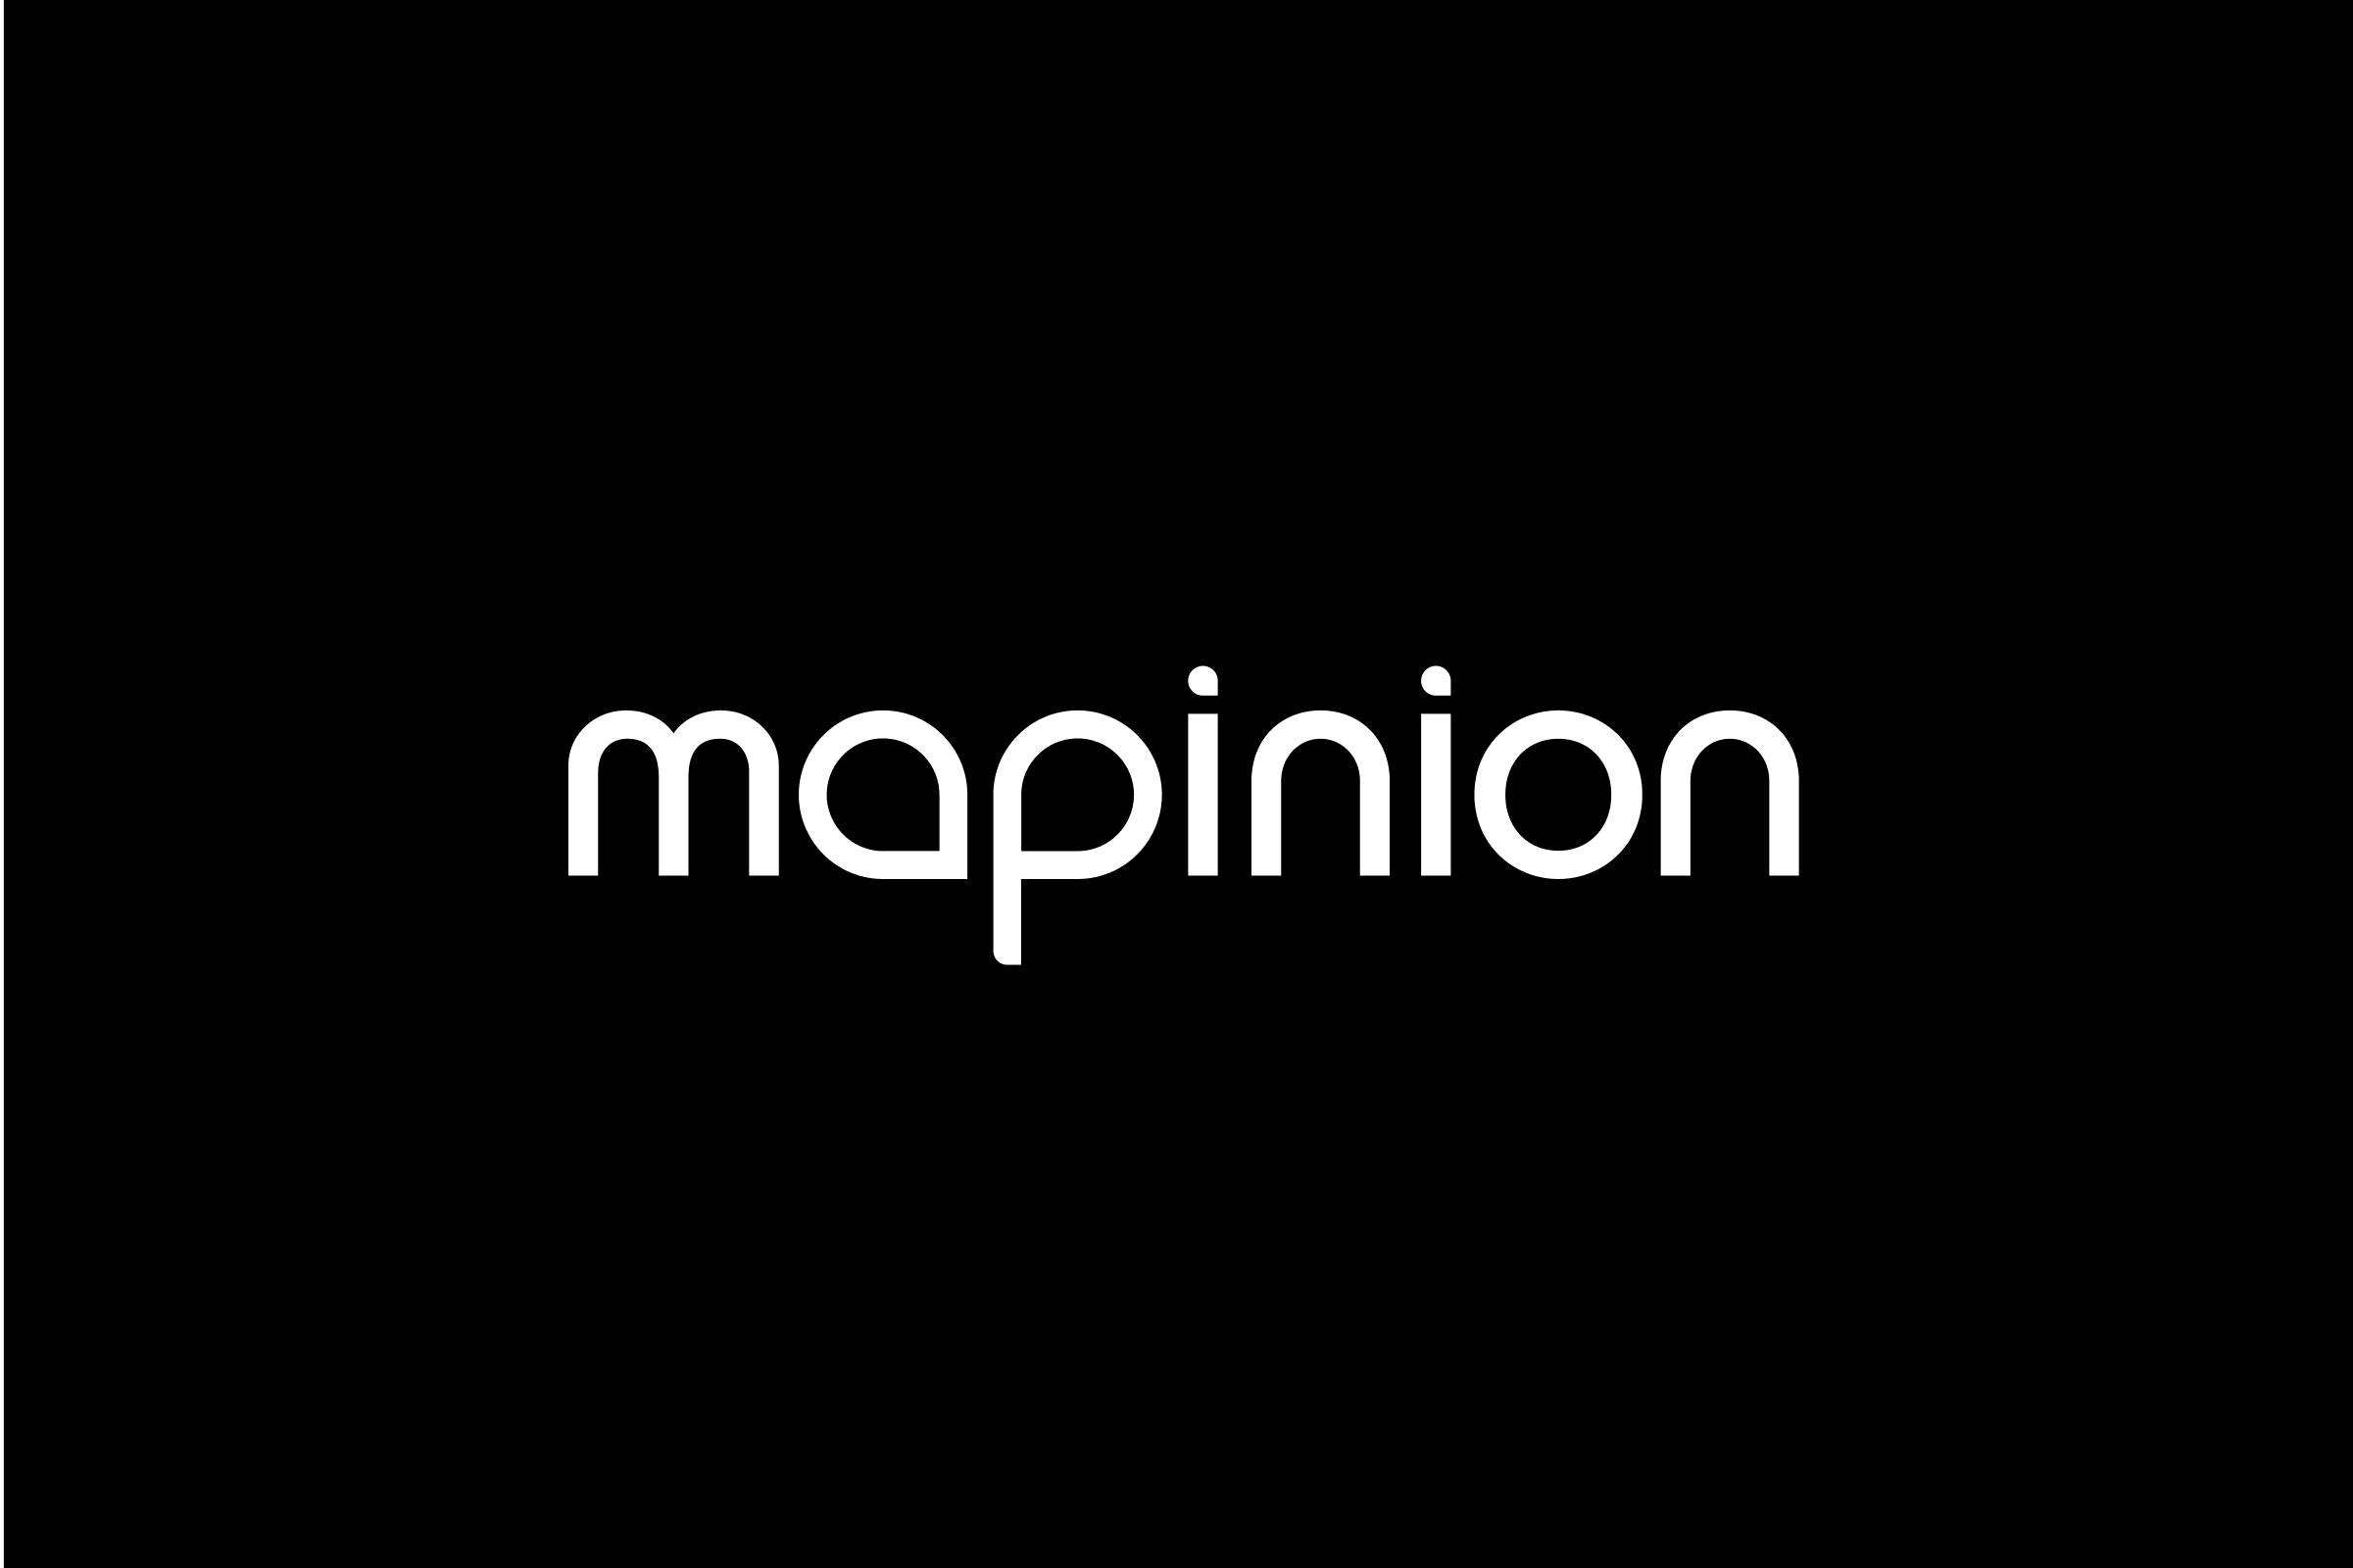 simon-p-coyle-branding-logo-design-2010-mapinion